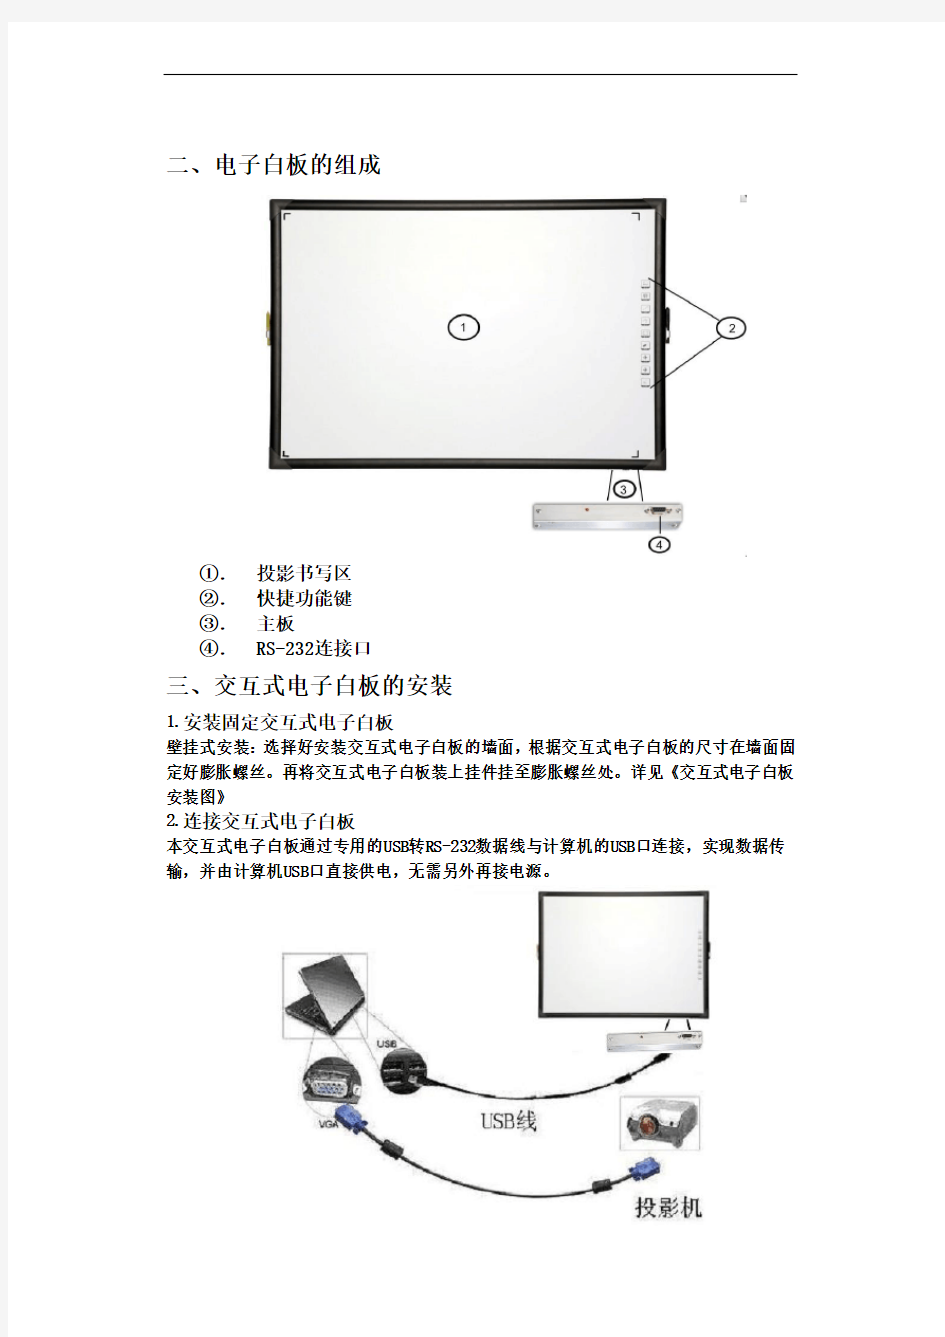 交互式电子白板安装使用说明书